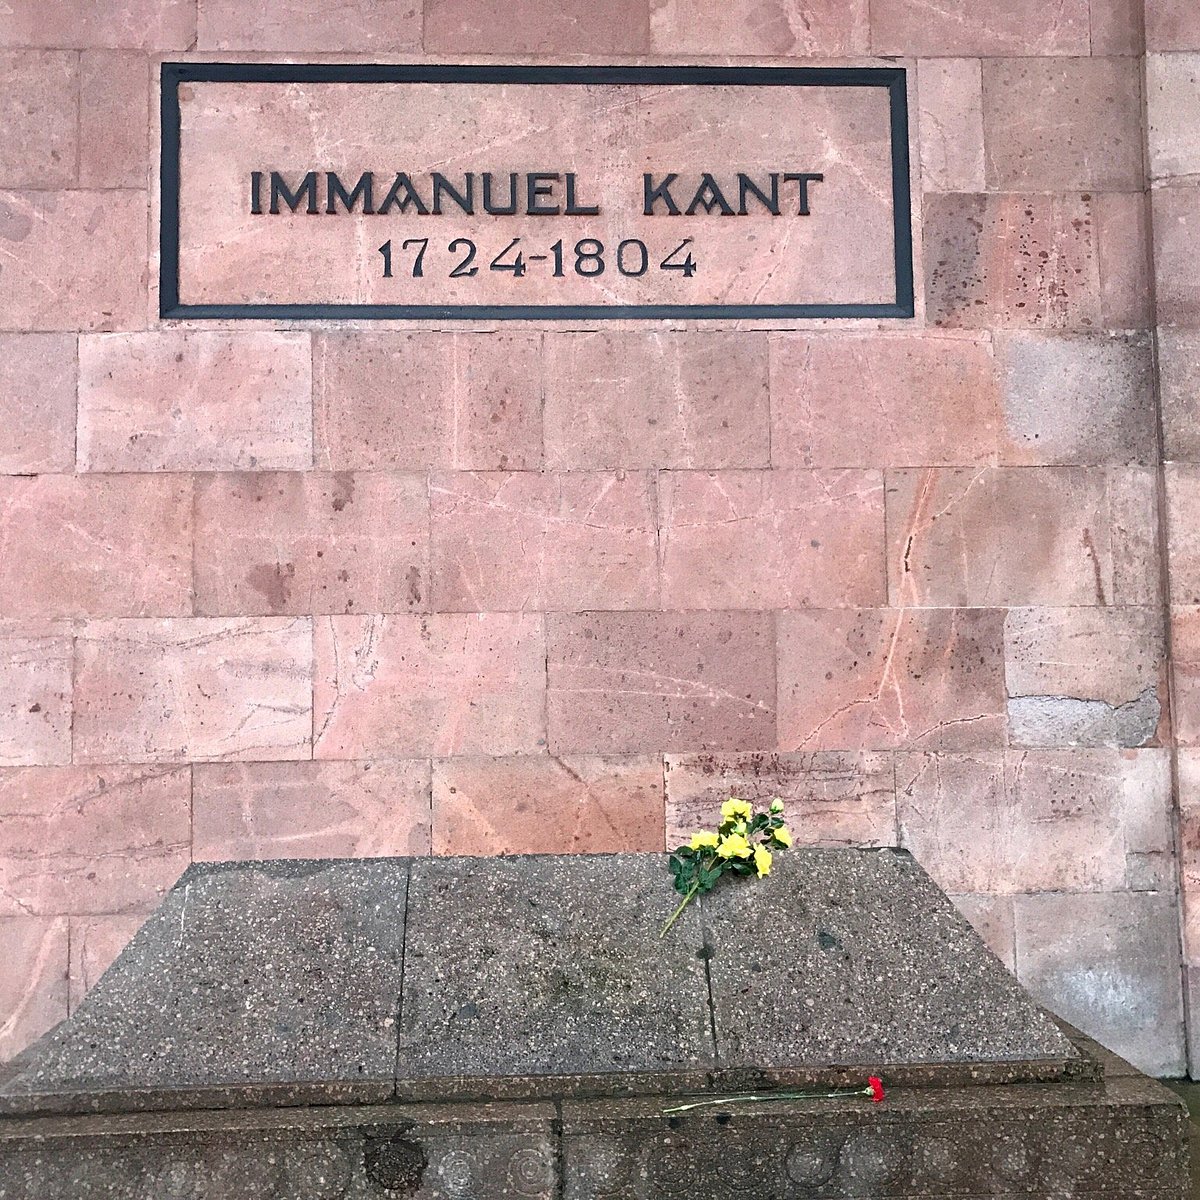 Immanuel Kant's Grave, Kaliningrad